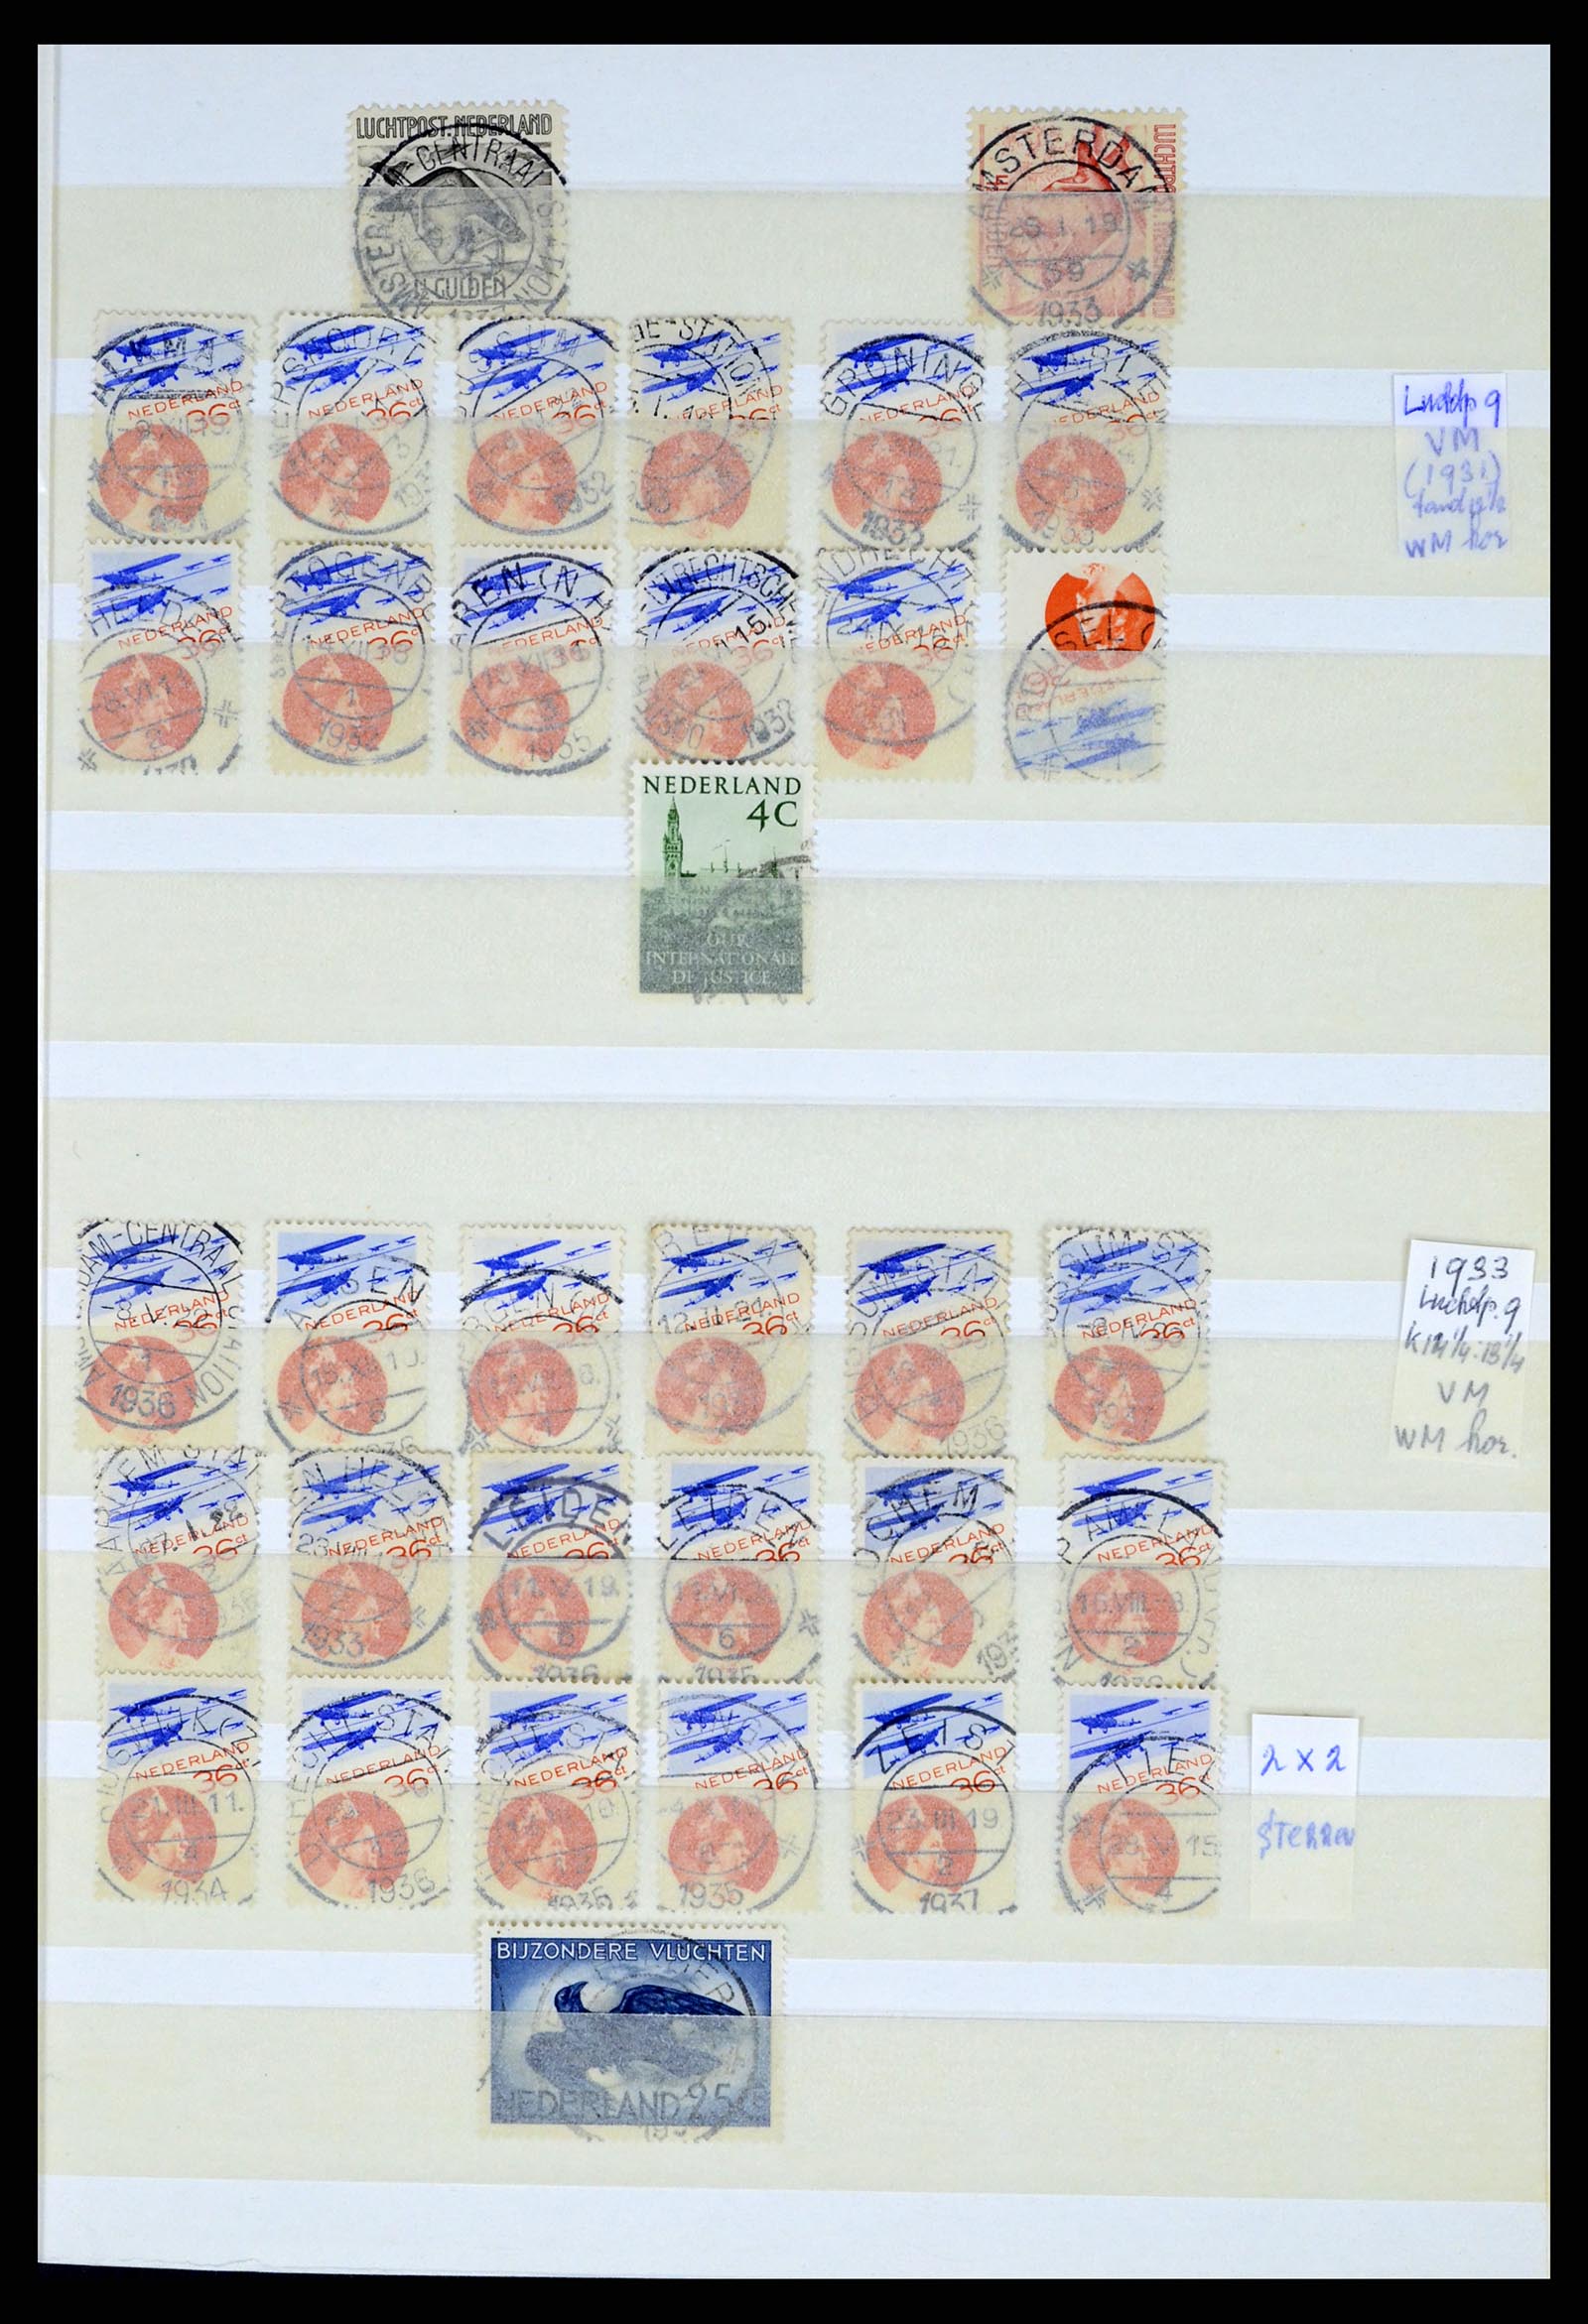 37424 063 - Postzegelverzameling 37424 Nederland kortebalk stempels.